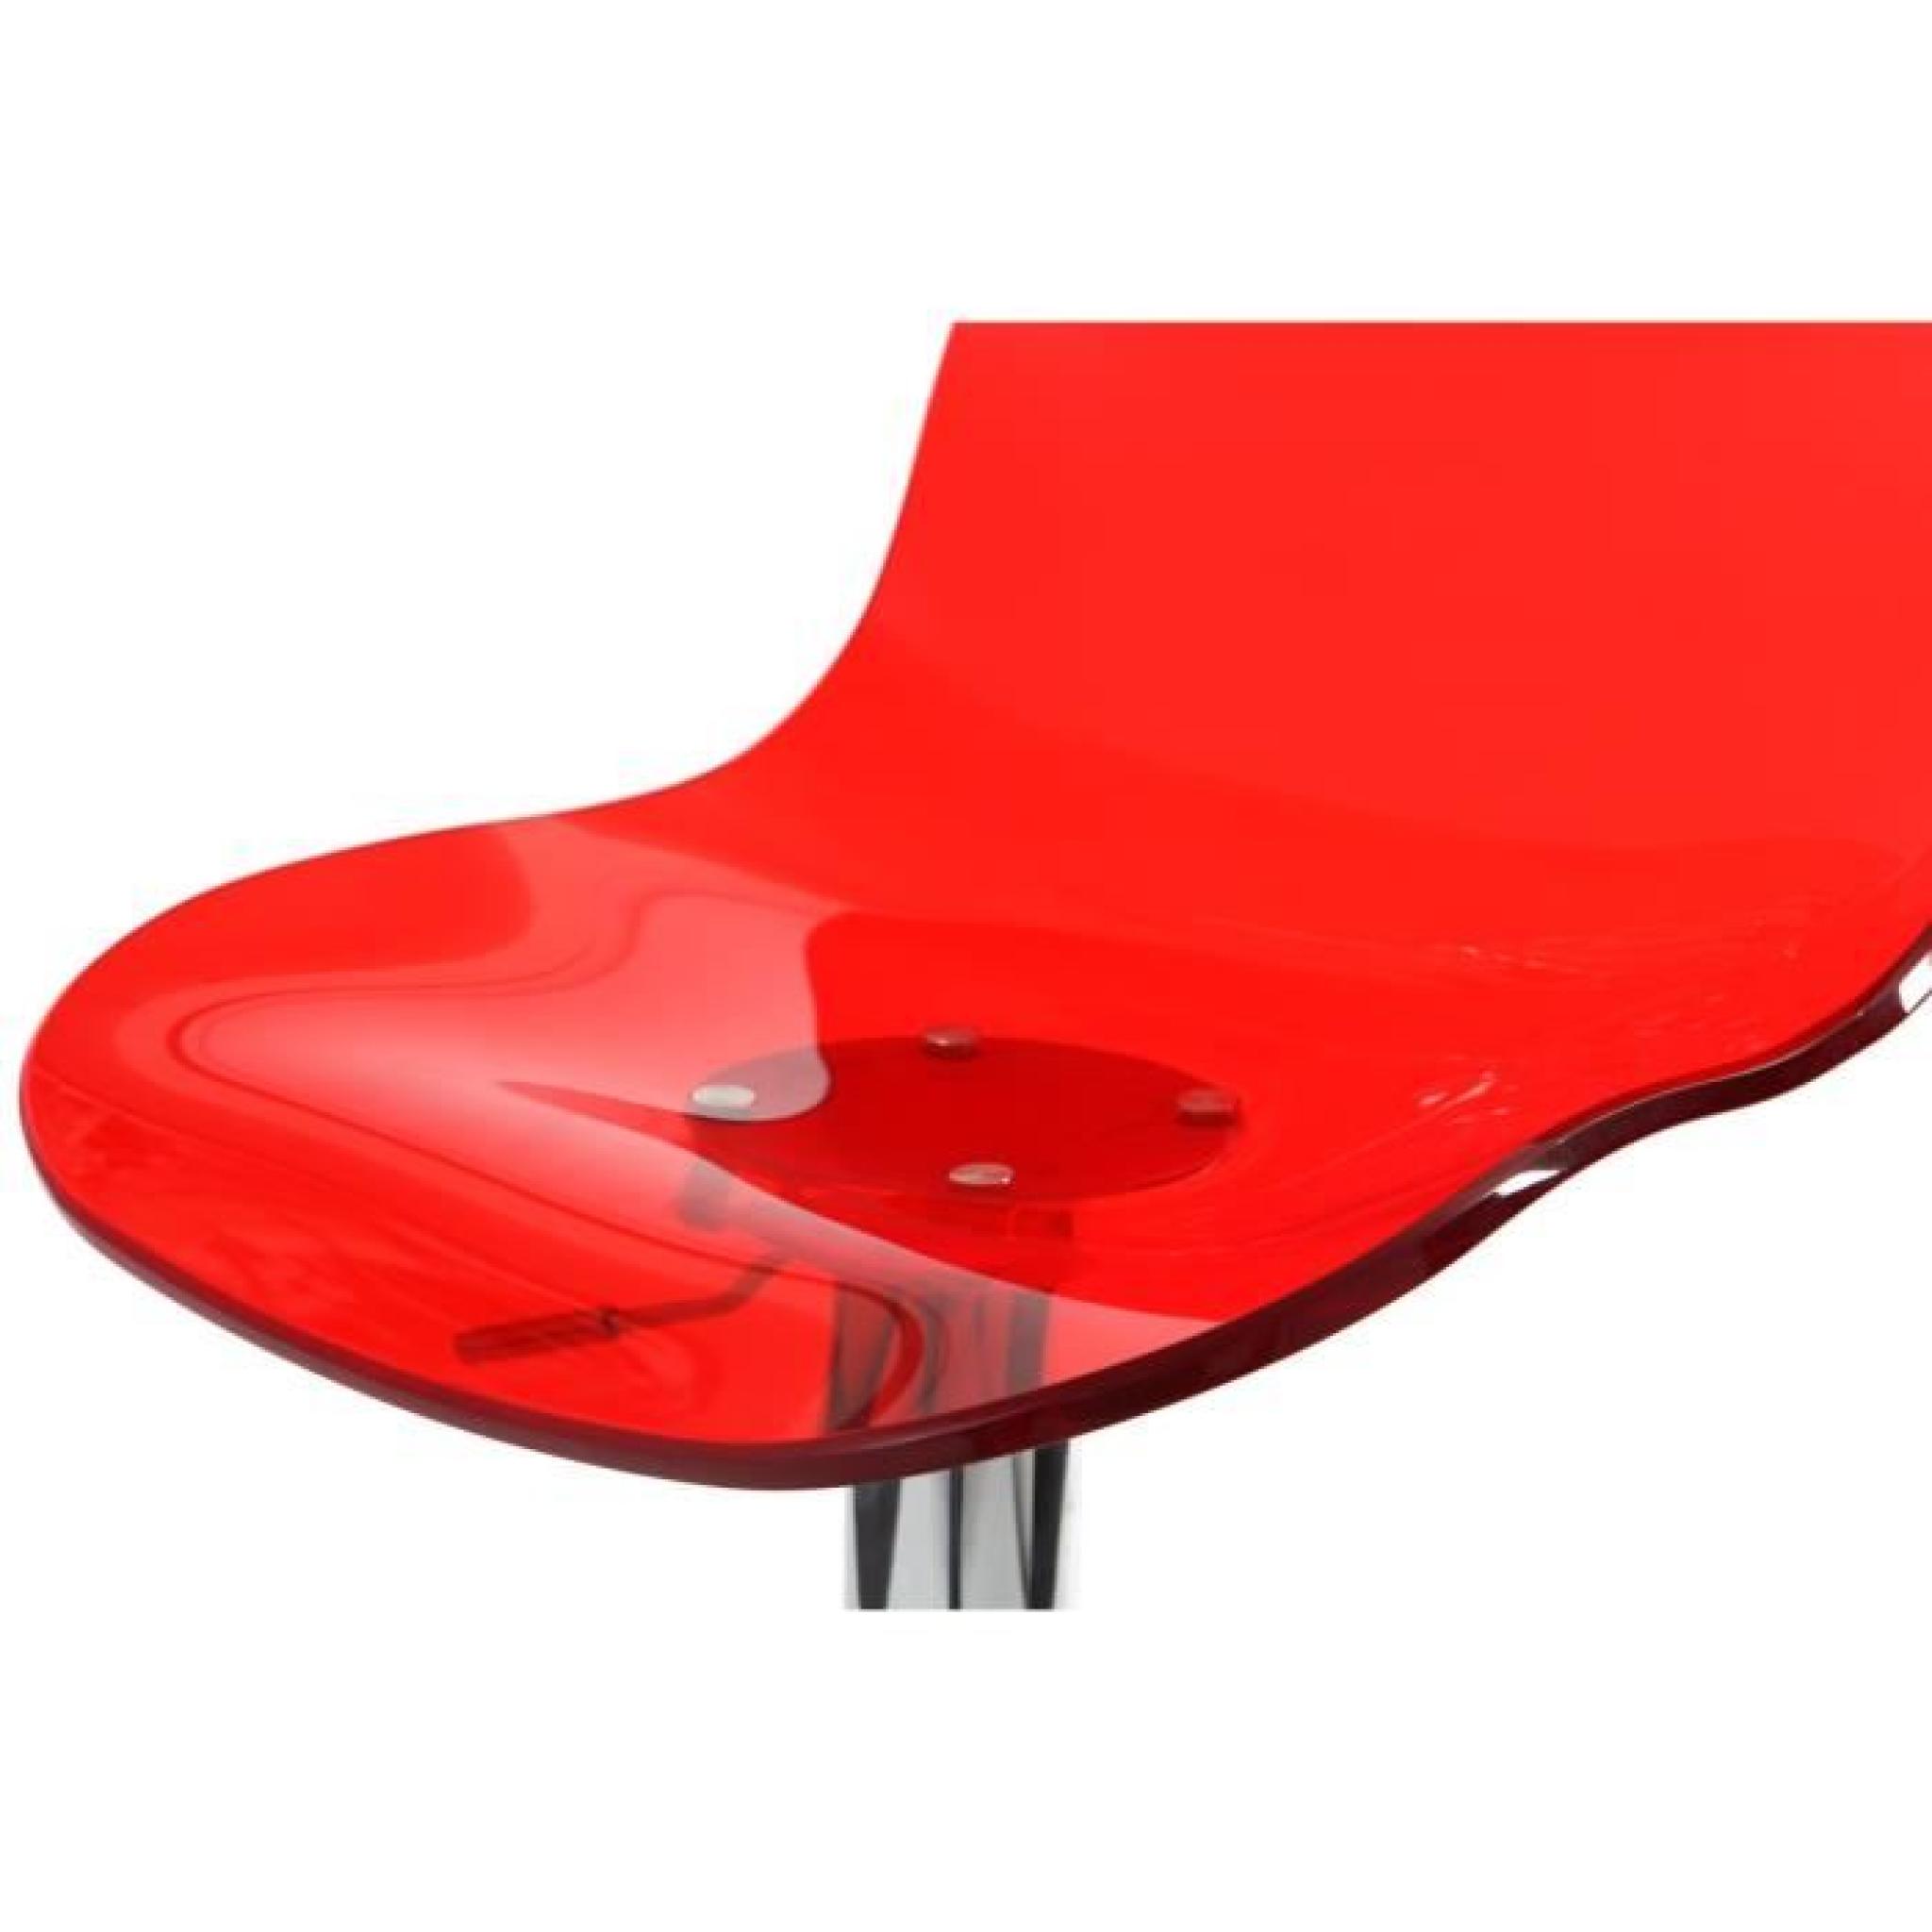 Miliboo - Tabouret de bar design rouge transpar… pas cher